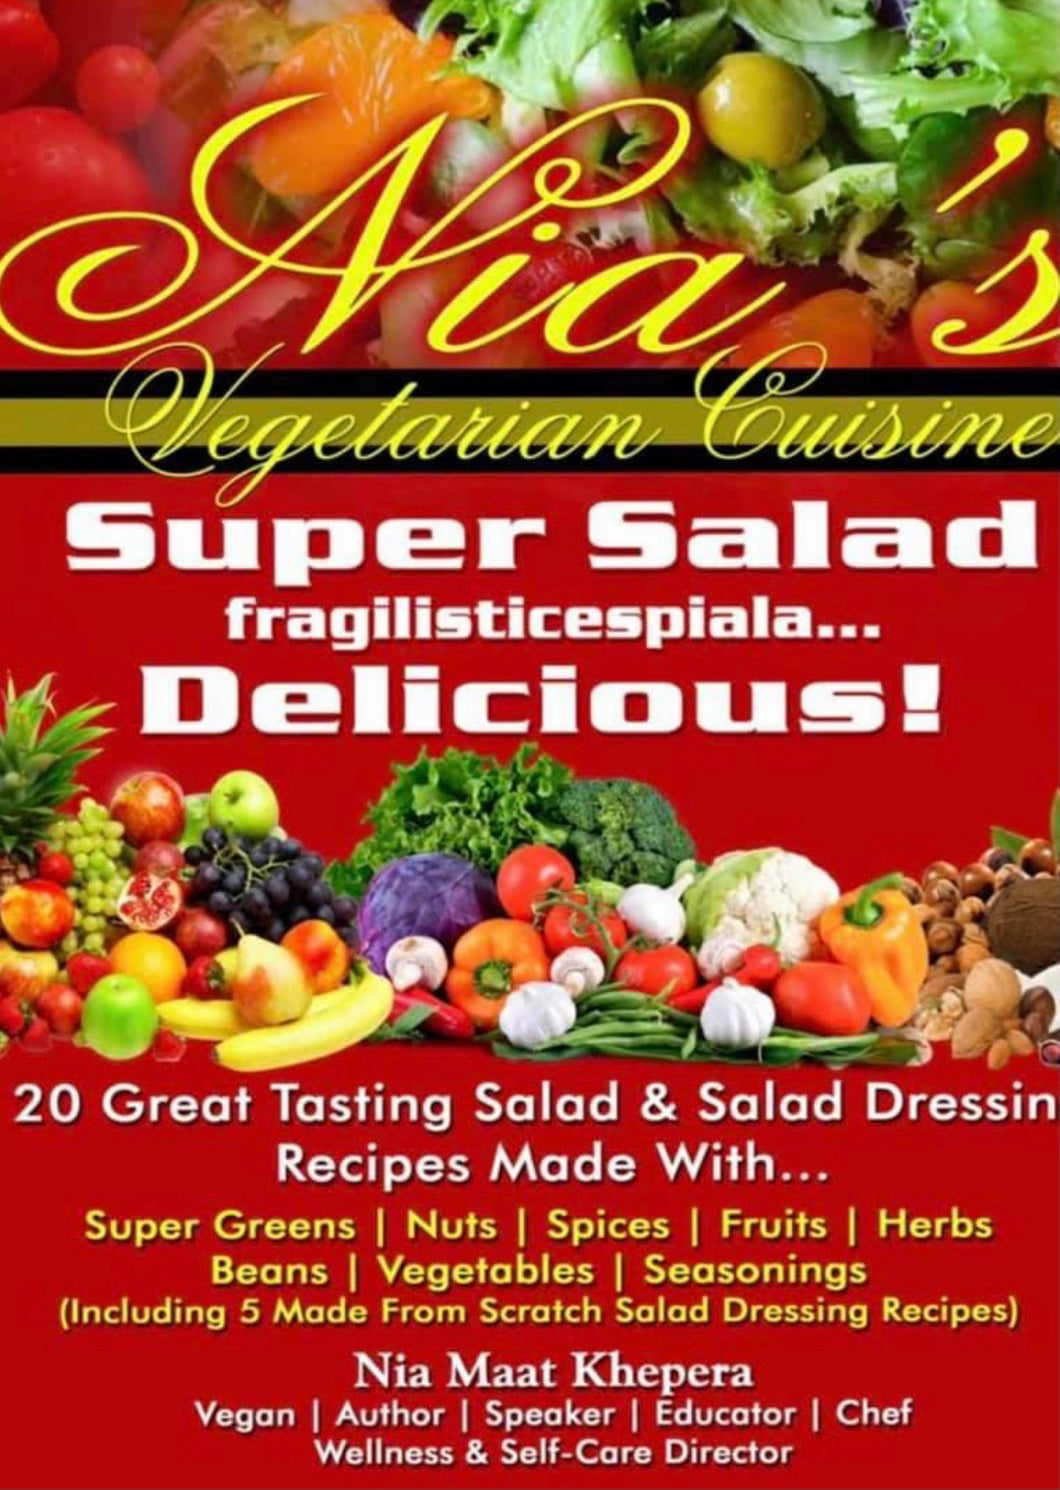 Super Salad fragilisticespiala... Delicious